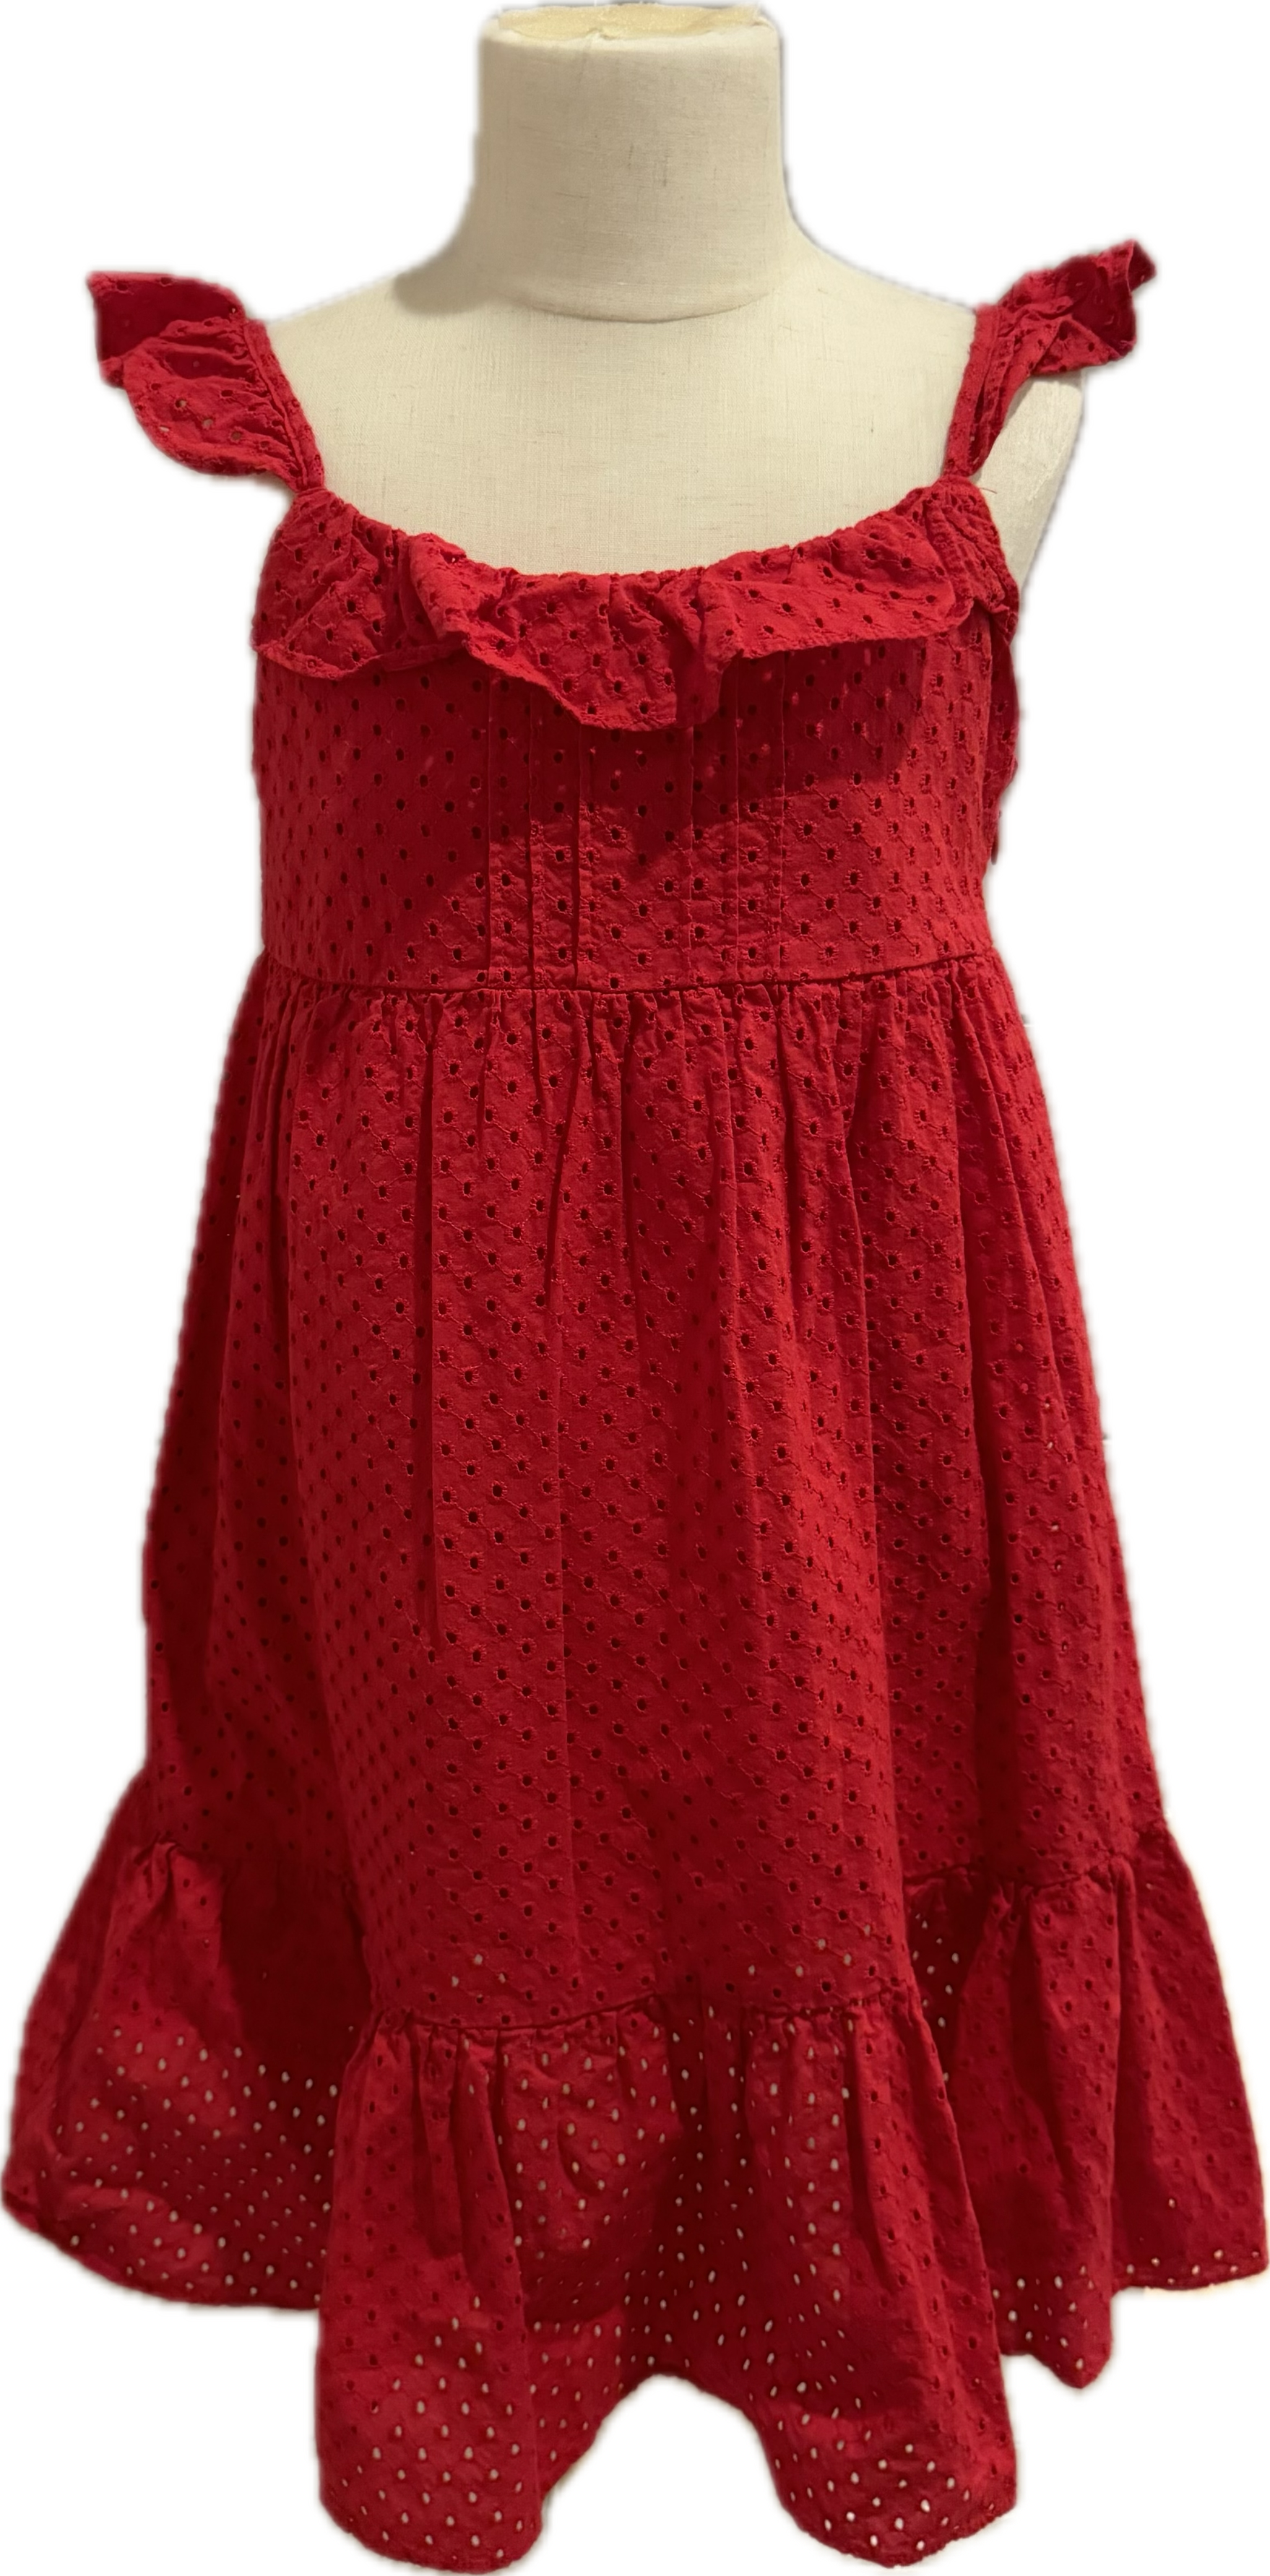 Gap Eyelet Dress, Red Girls Size M (8)